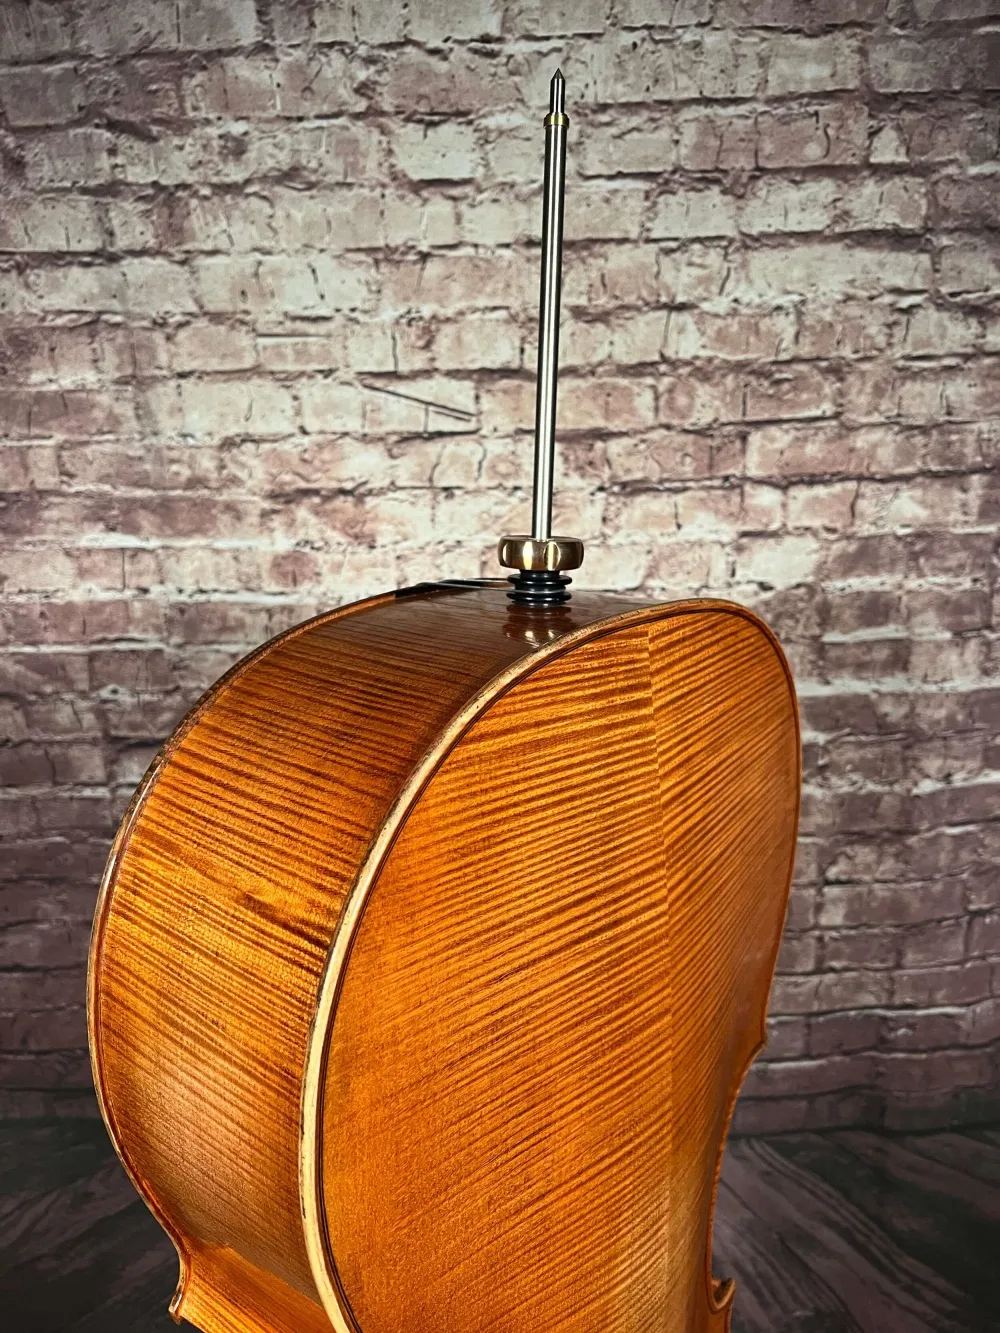 Stachel-hinten-Detailansicht eines Bivaj Árt Meister Cello (Violoncello) Modell STRADIVARI Handarbeit 2021